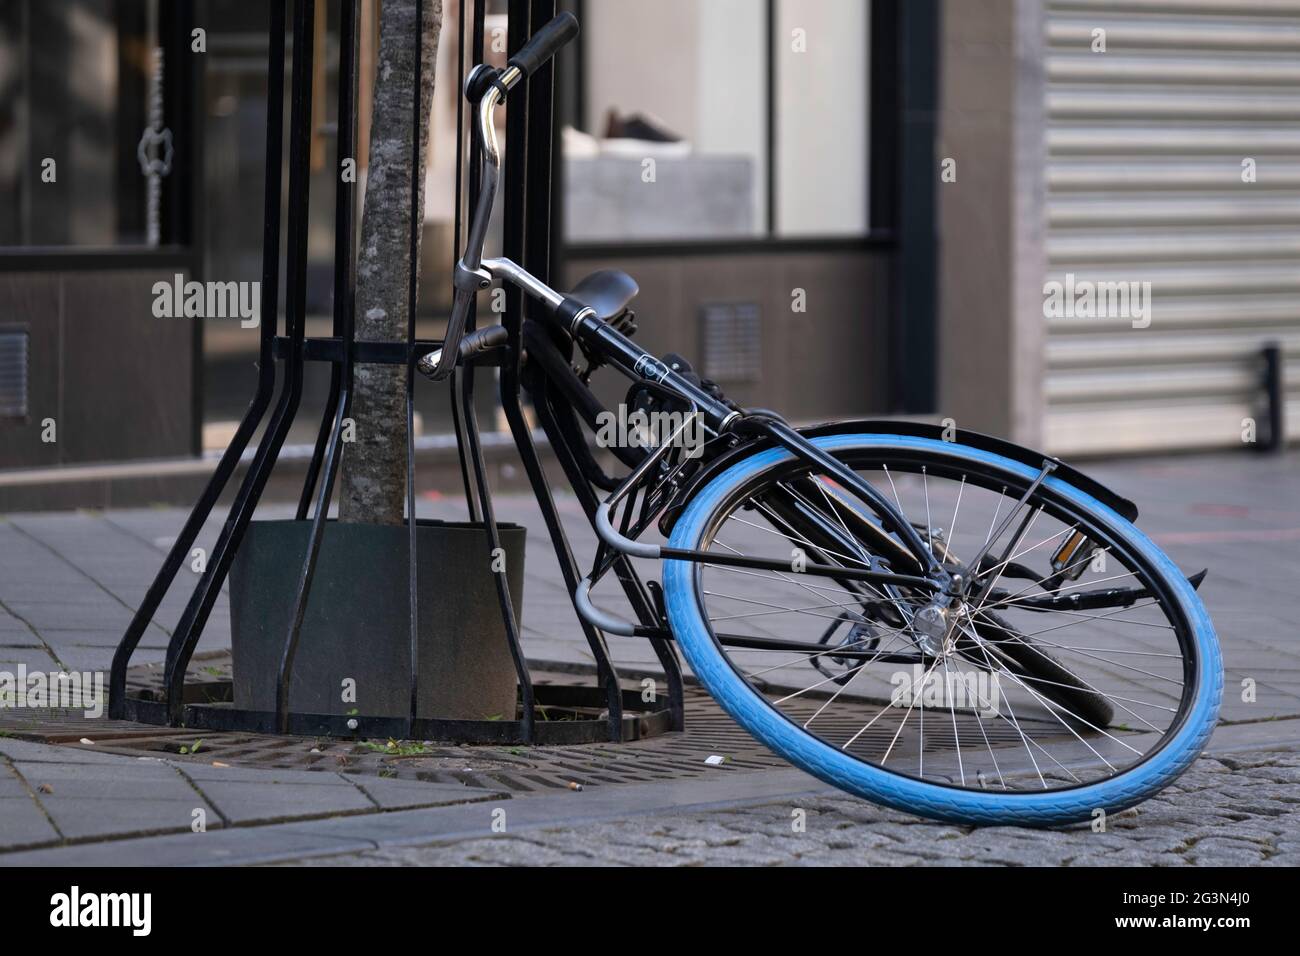 Vélo noir avec pneu bleu est à moitié sur le sol et à moitié contre un arbre dans une rue commerçante, garée sans prudence ou est tombé dessus. Vélo tombé Banque D'Images